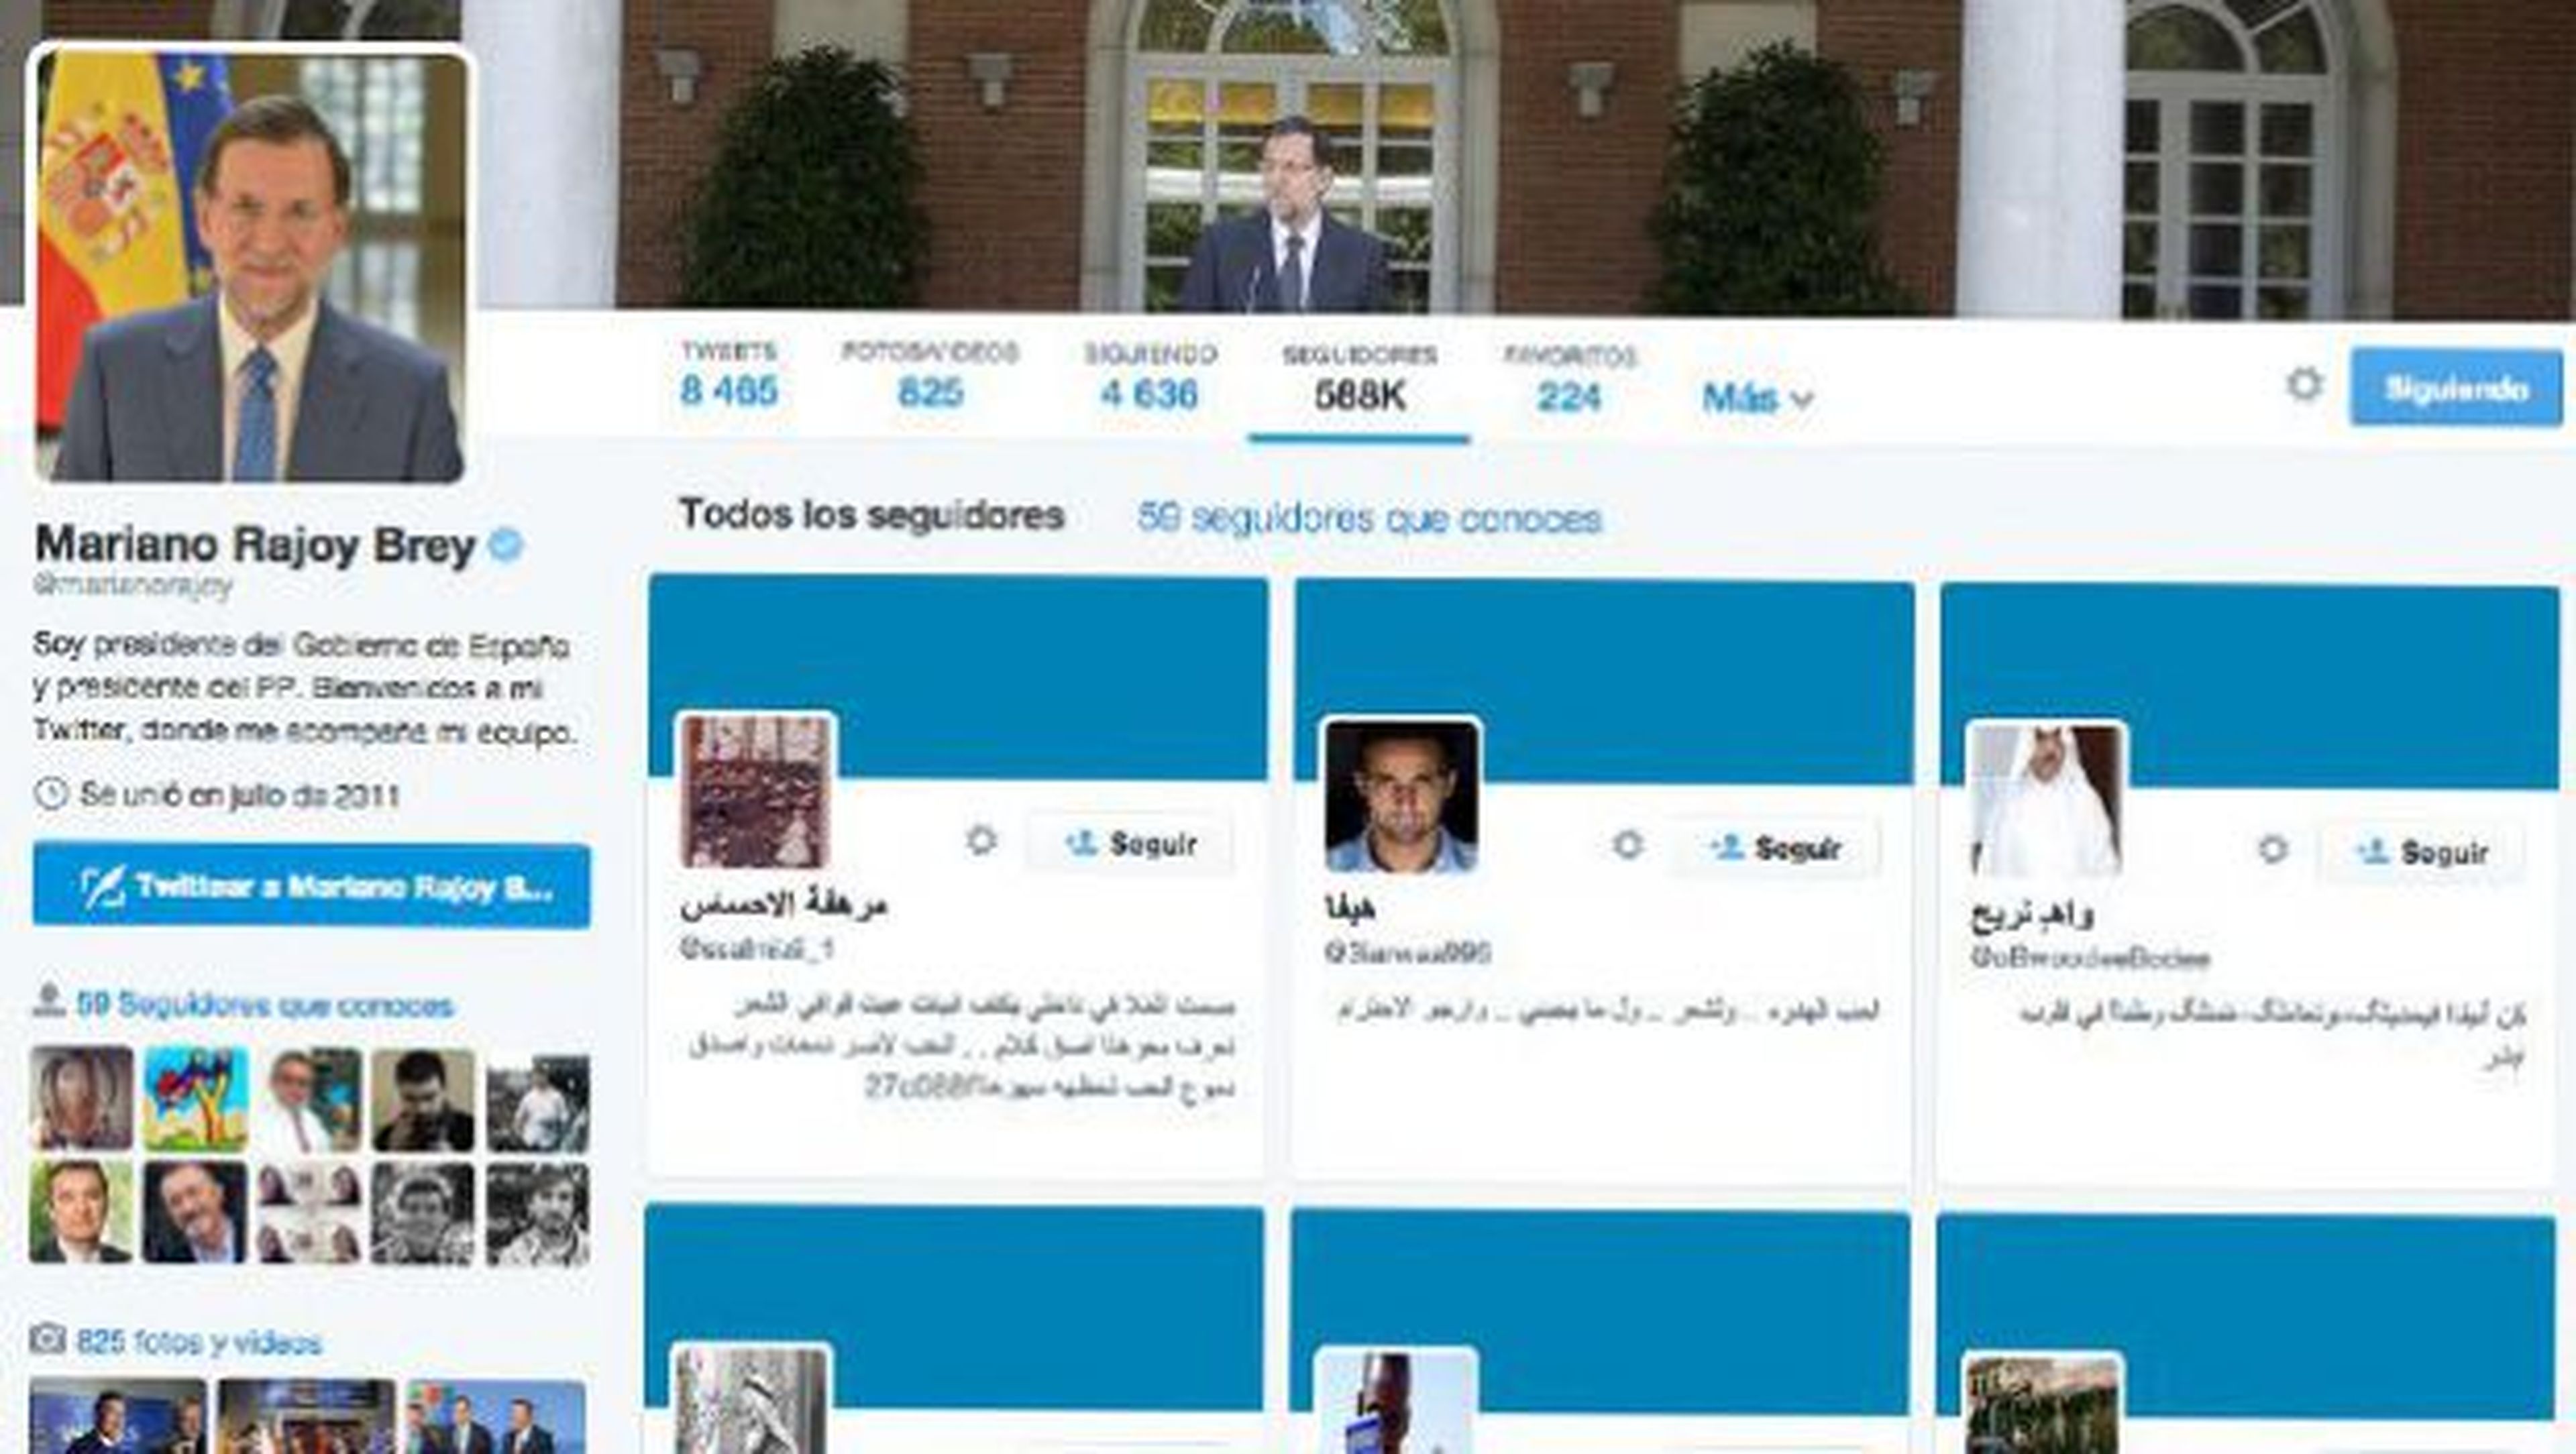 Mariano Rajoy y los seguidores falsos en Twitter